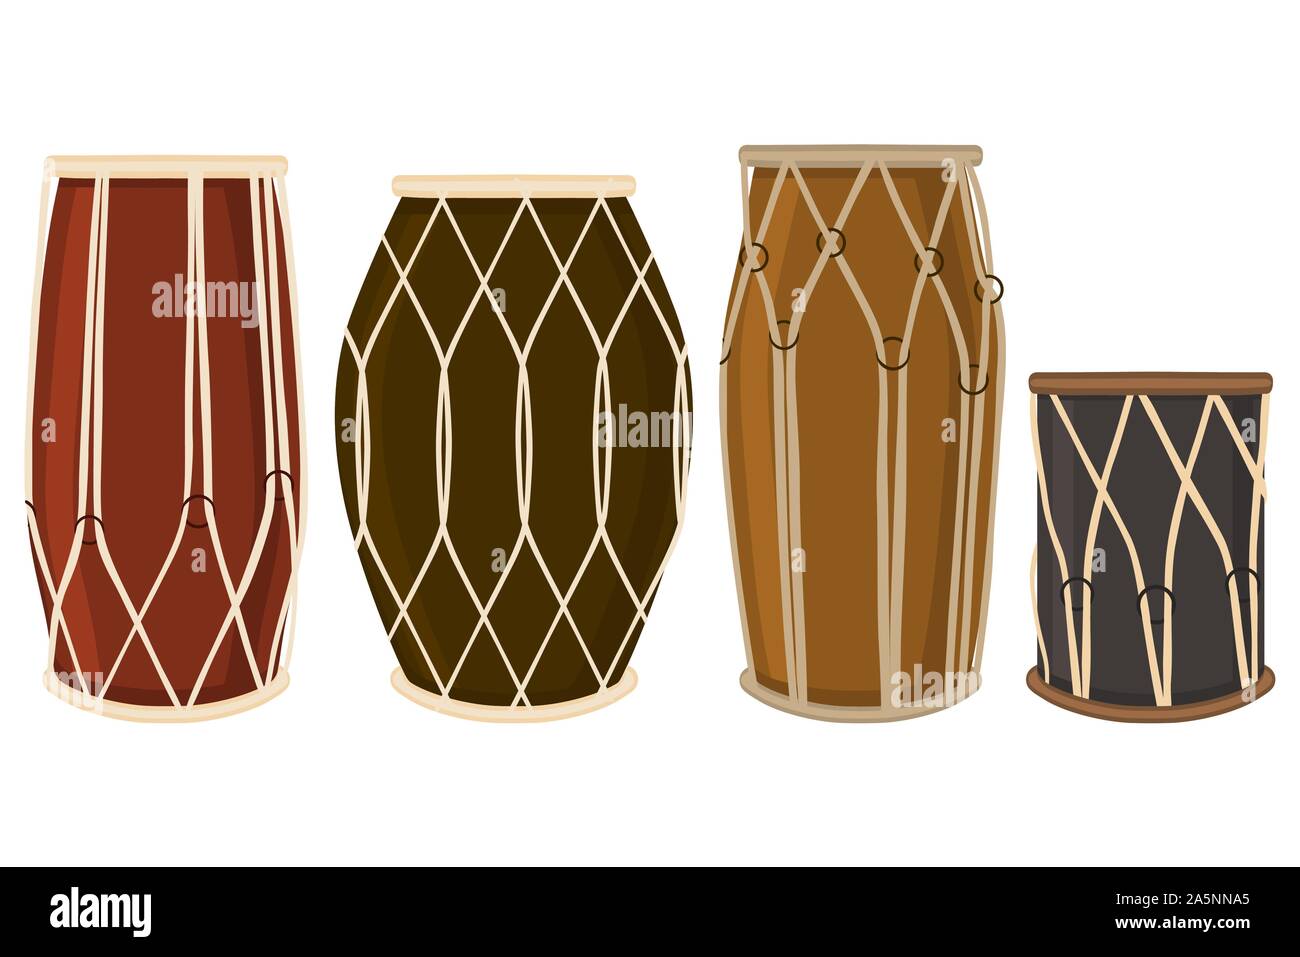 Abbildung auf Thema große farbige verschiedene Arten audio Drums, tambour verschiedene Größe gesetzt. Drum Pattern bestehend aus Sammlung Zubehör tambour Orche Stock Vektor